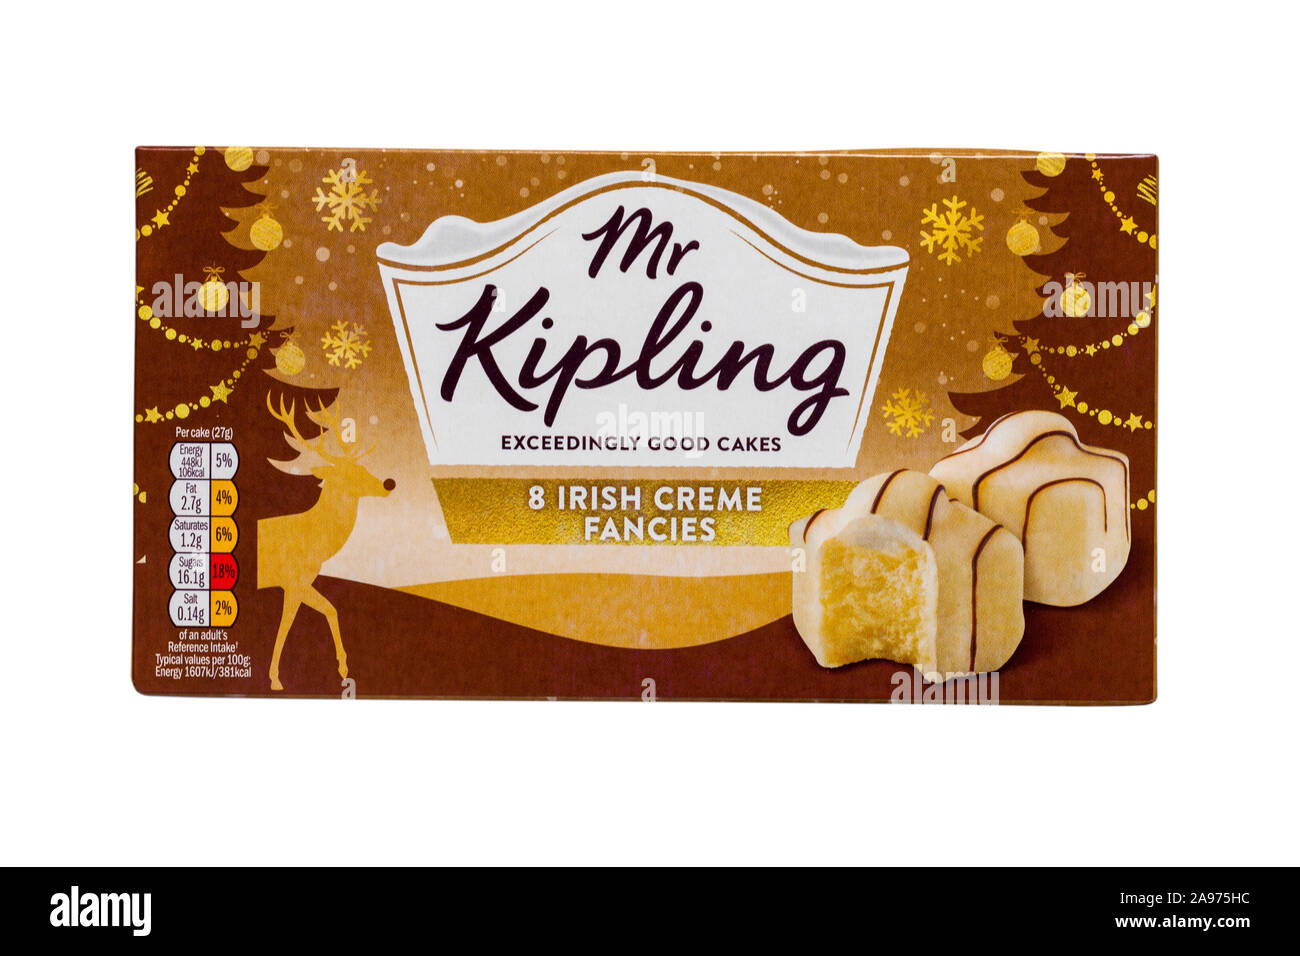 Box von Herr Kipling 8 irische Crème Phantasien, die überaus guten Kuchen auf weißem Hintergrund Stockfoto